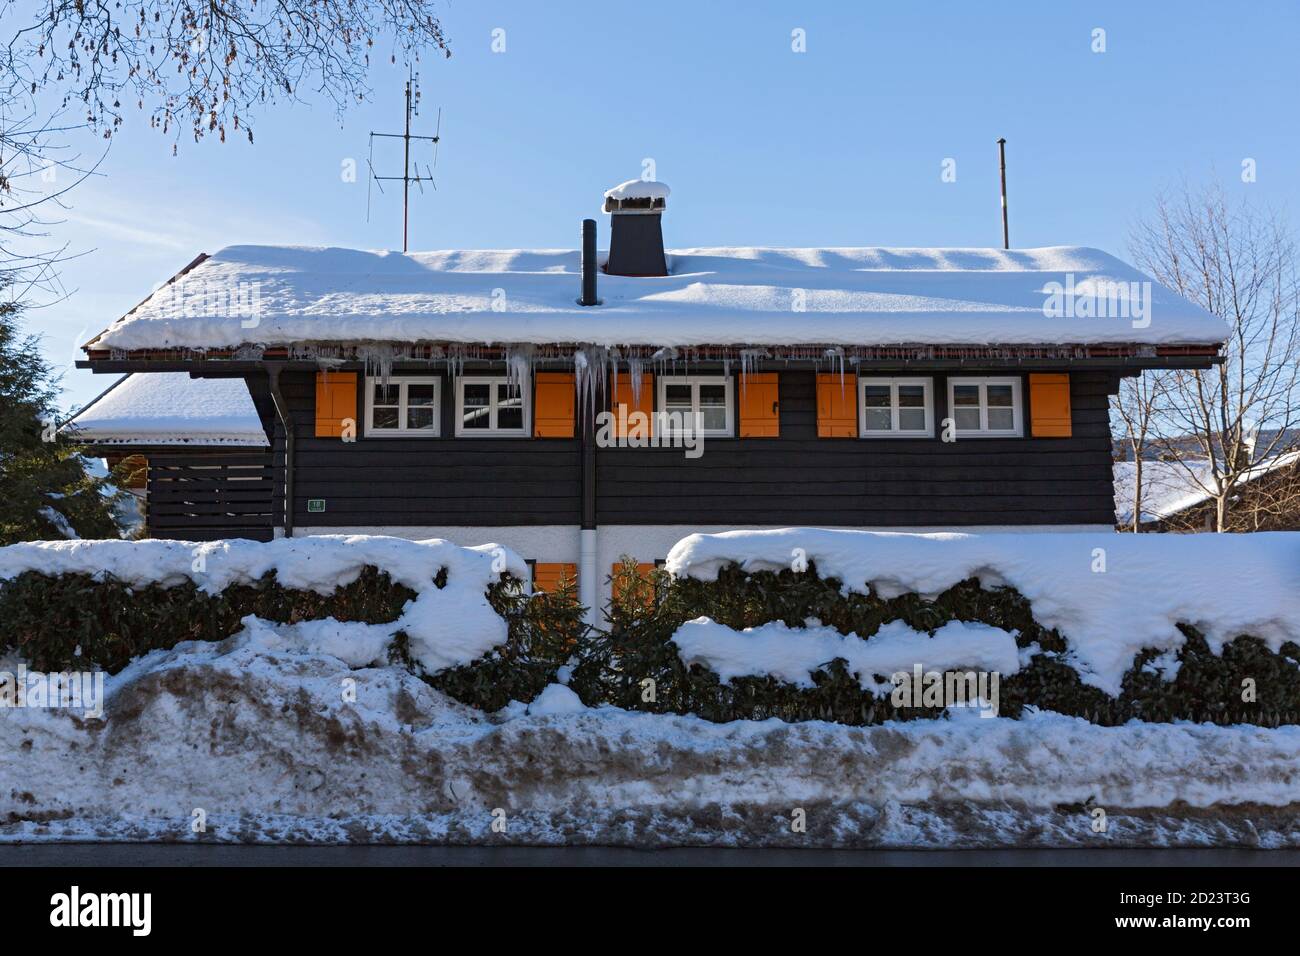 Oberstdorf, Strasse, Hecke, Wohnhaus, schneebedeckt, Fuggerstrasse Banque D'Images